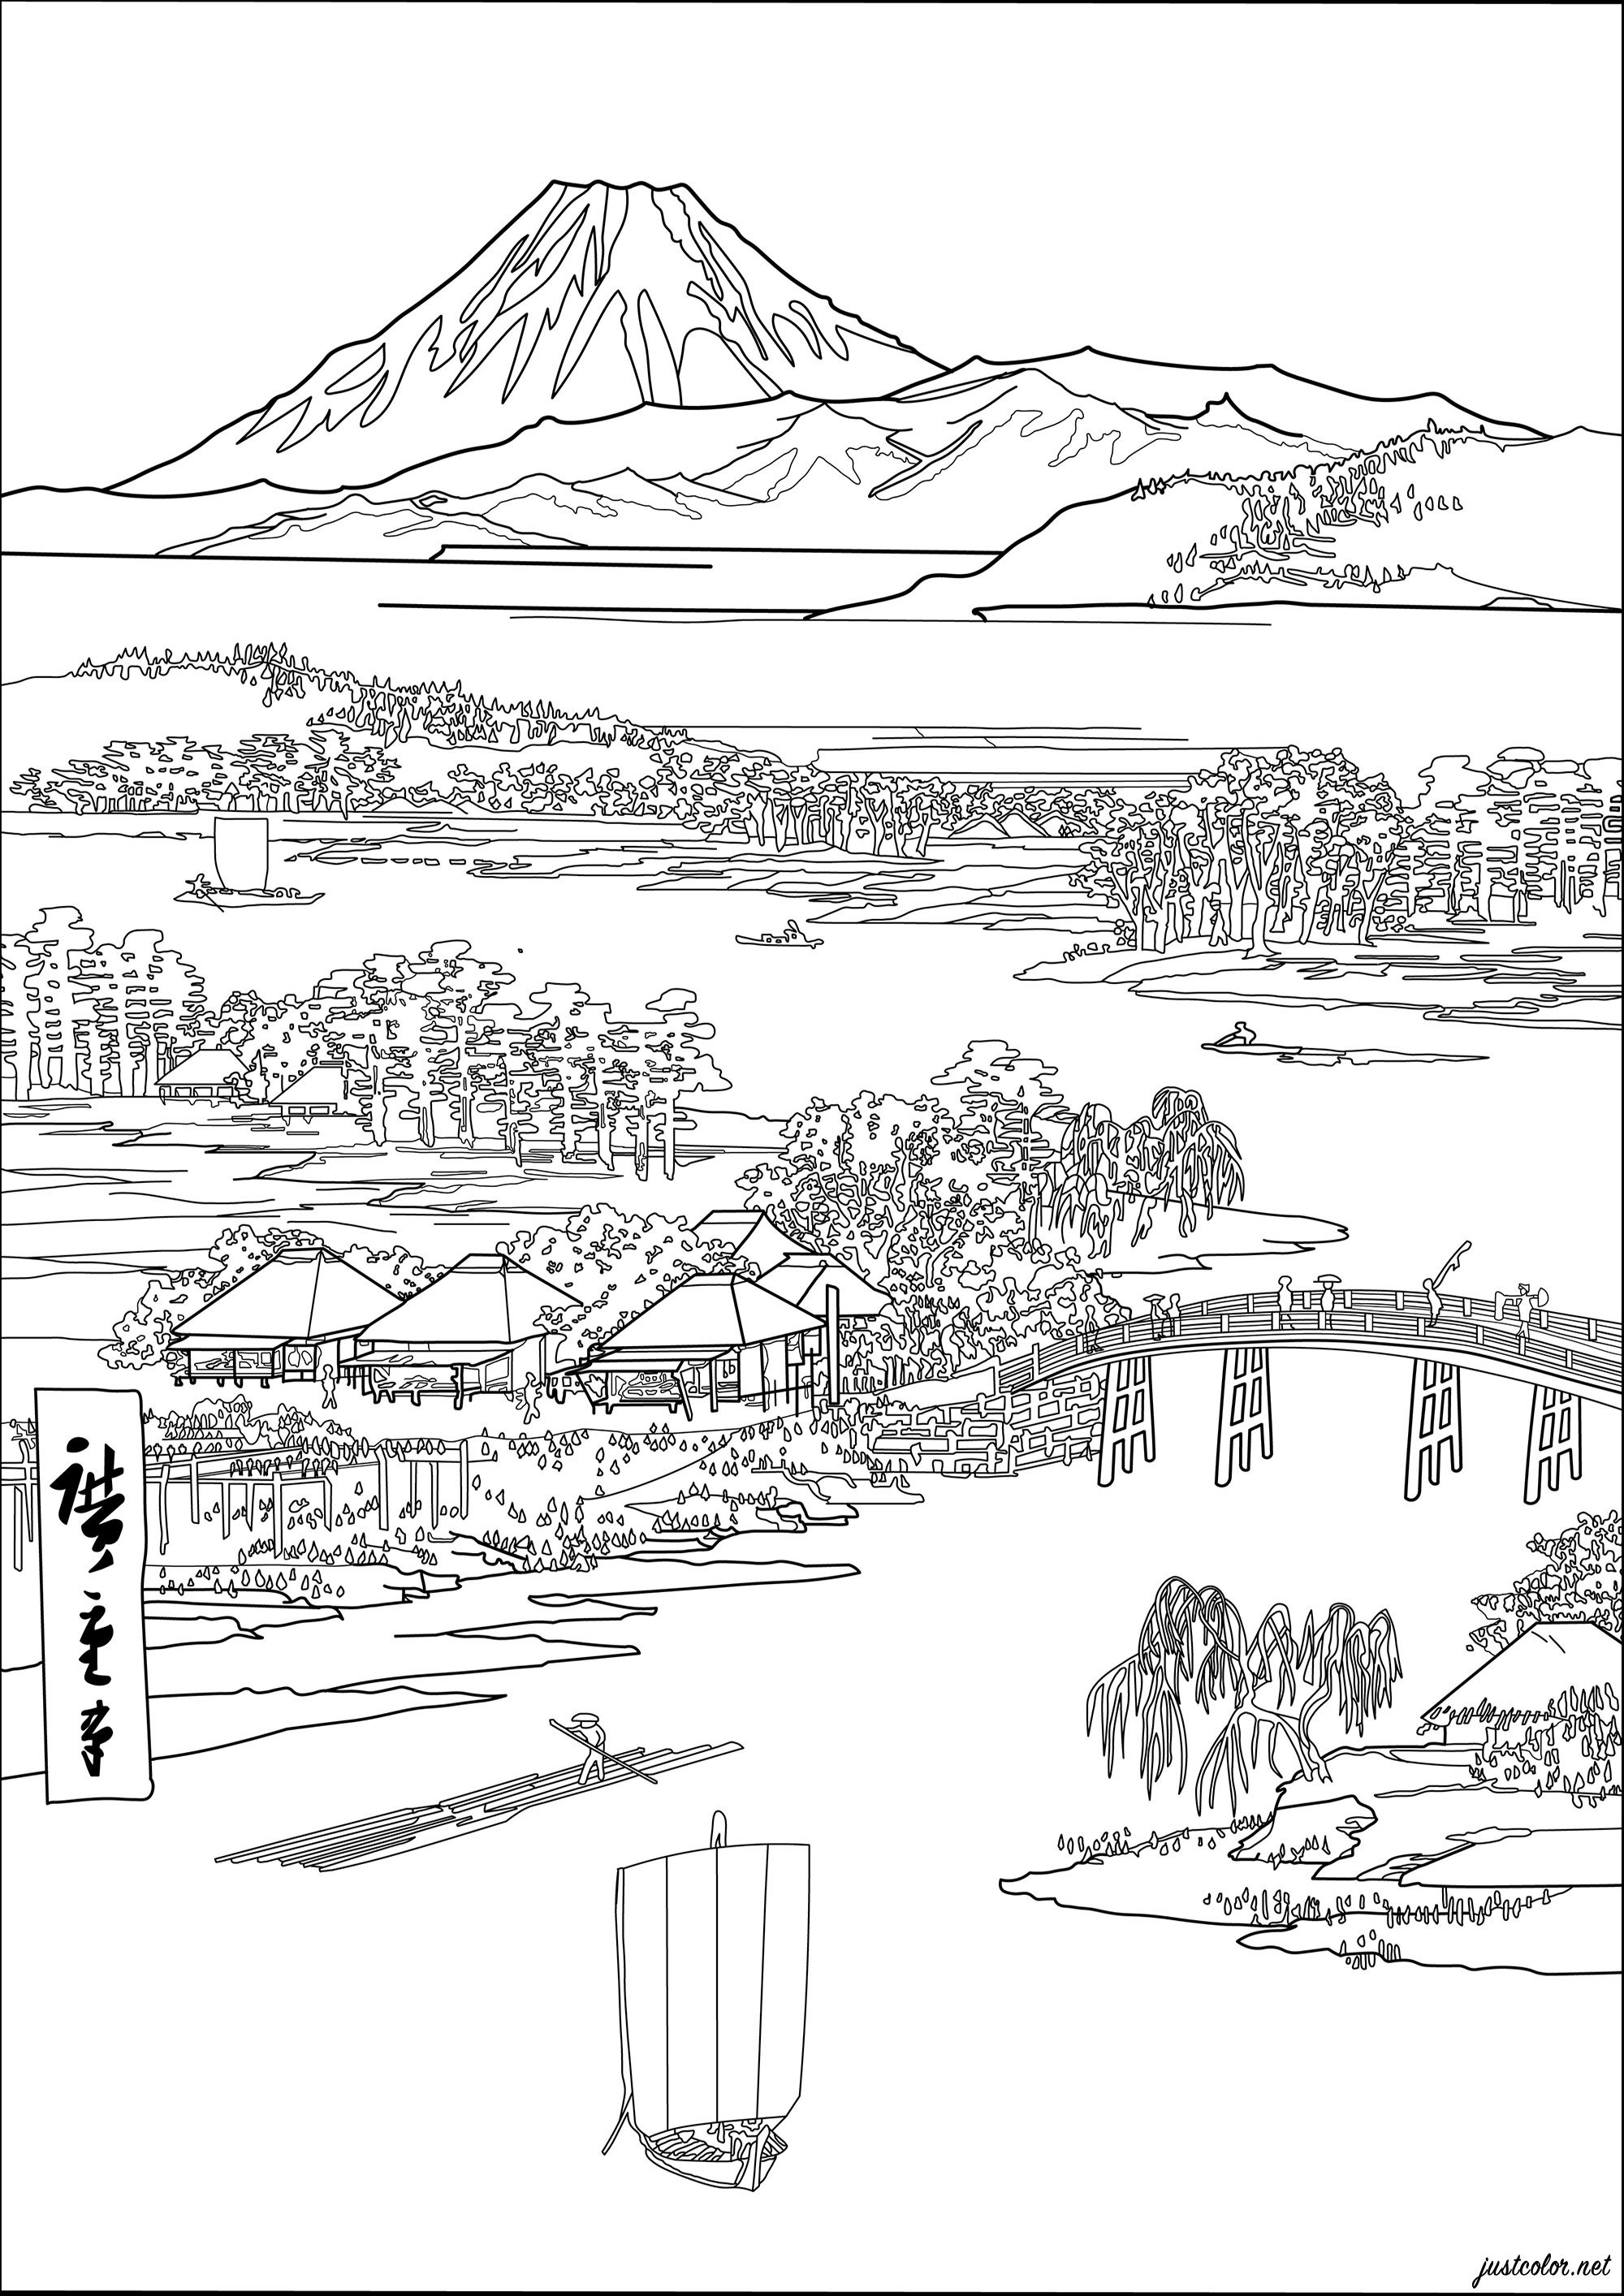 Coloriage créé à partir d'une estampe japonaise de Utagawa Hiroshige (1833). Cette estampe japonaise représente une scène japonaise classique, avec des maisons de style traditionnel et des montagnes en arrière-plan.Les couleurs originales sont douces et pastel, avec des teintes de bleu, de vert et de rose, Artiste : Morgan